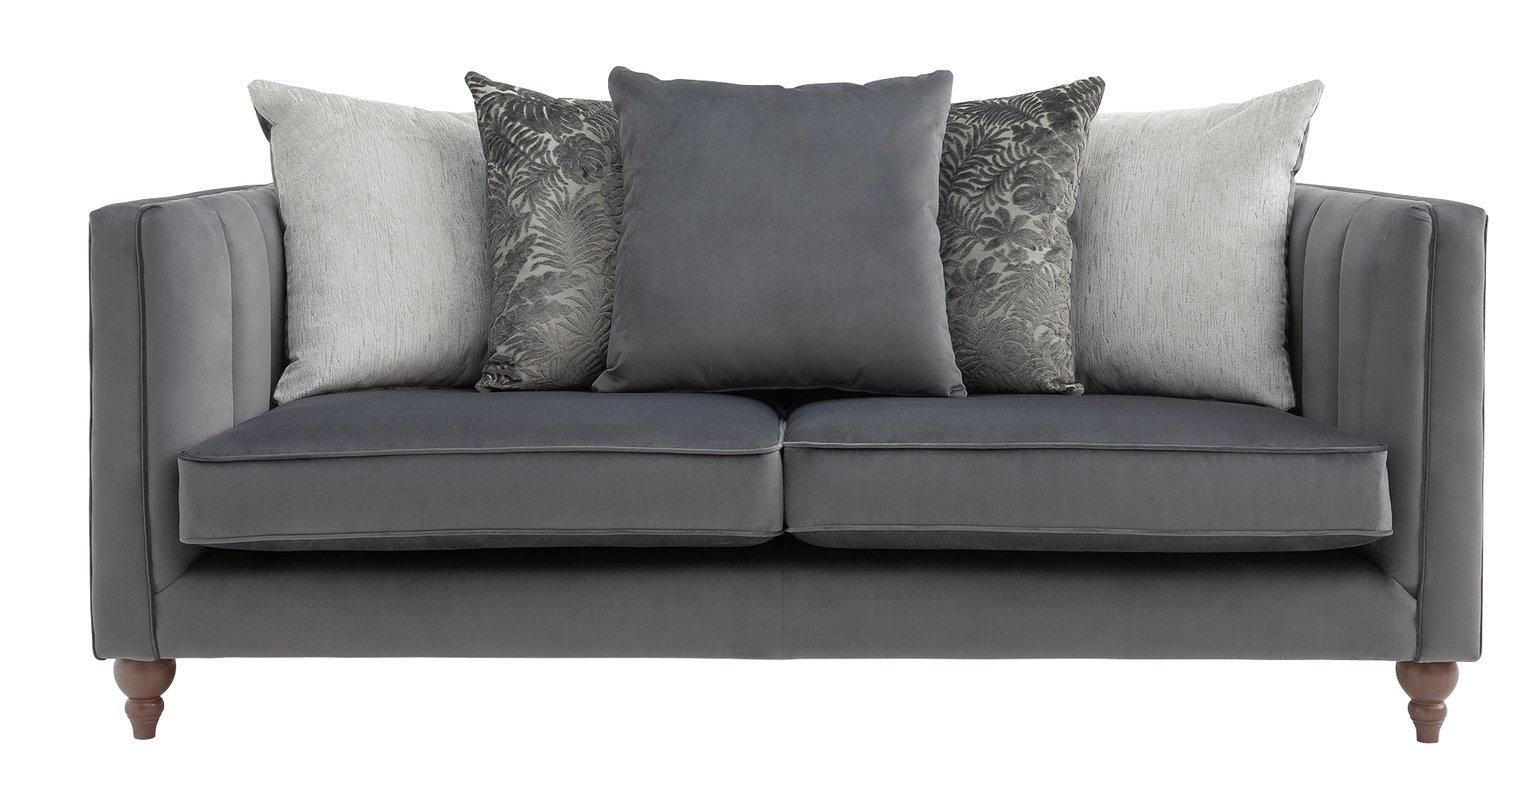 Argos Home Bardot 3 Seater Velvet Sofa - Charcoal